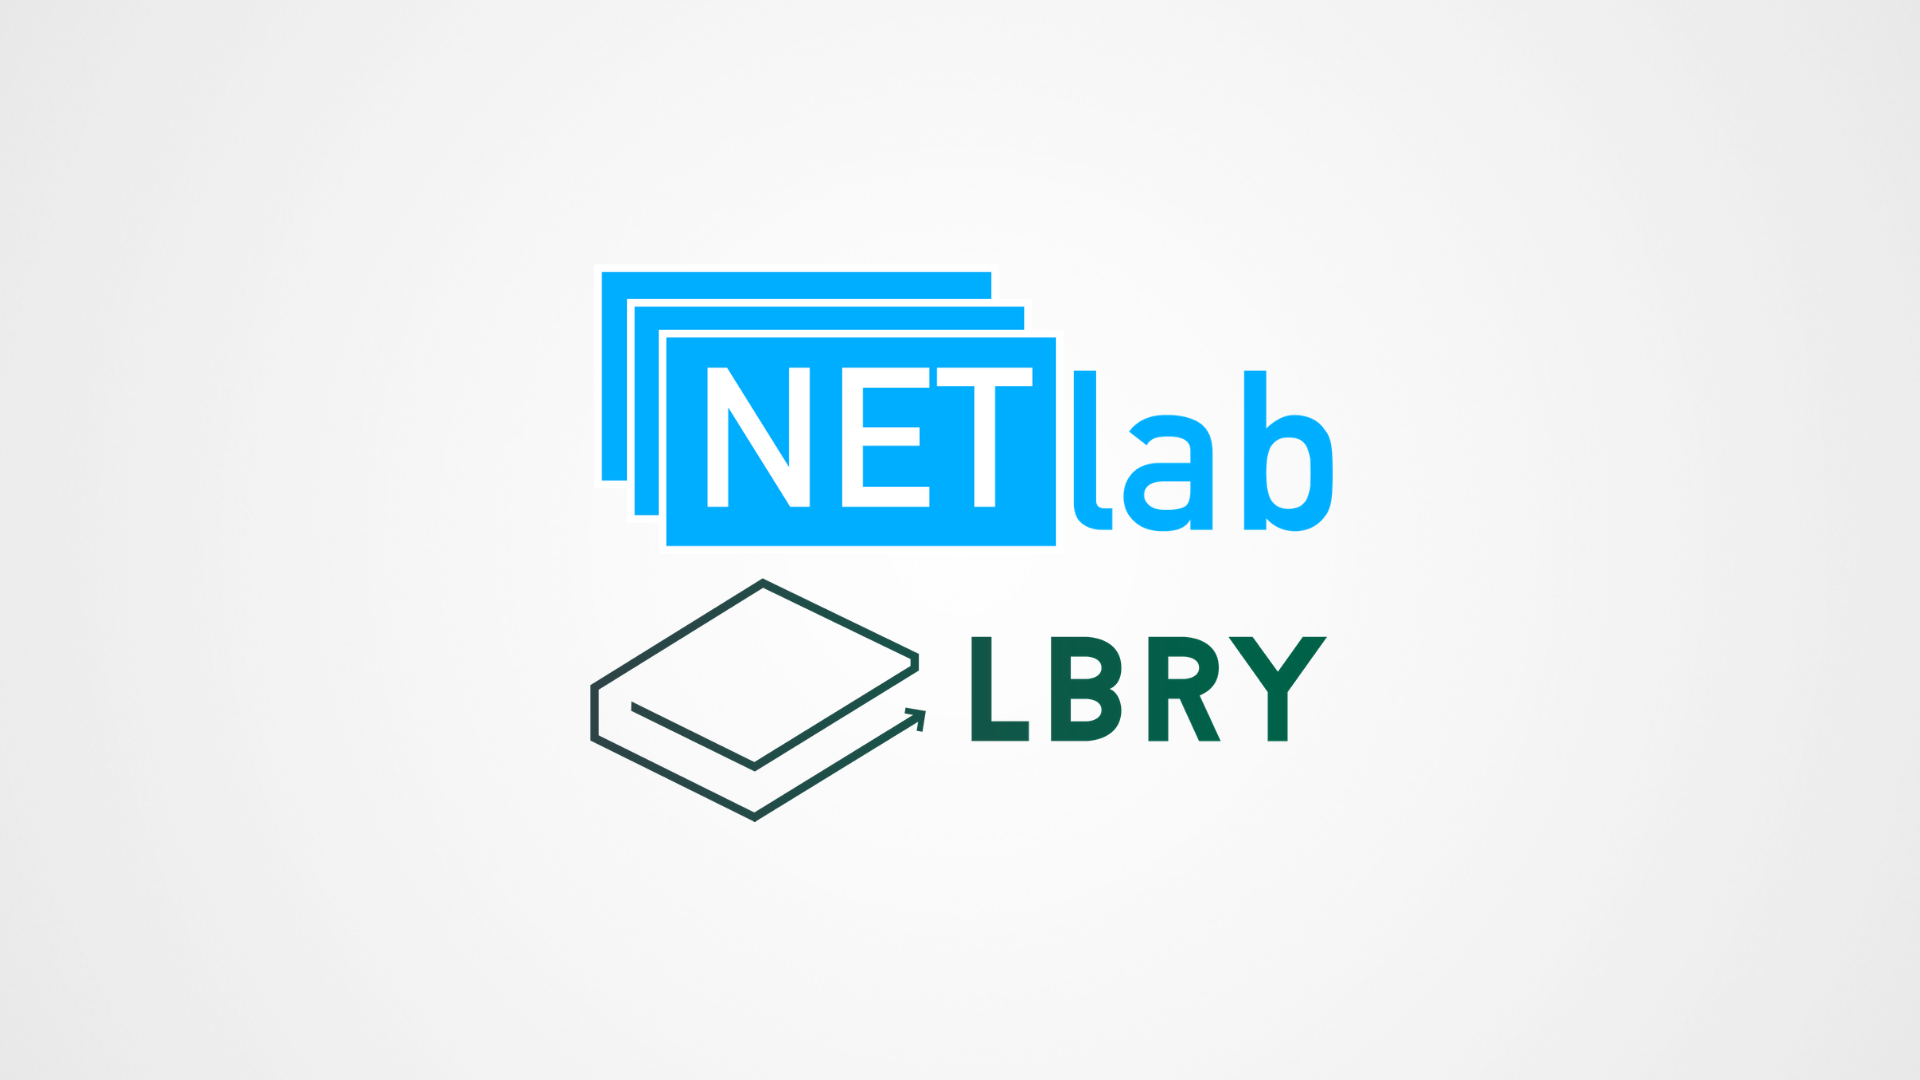 NETlab